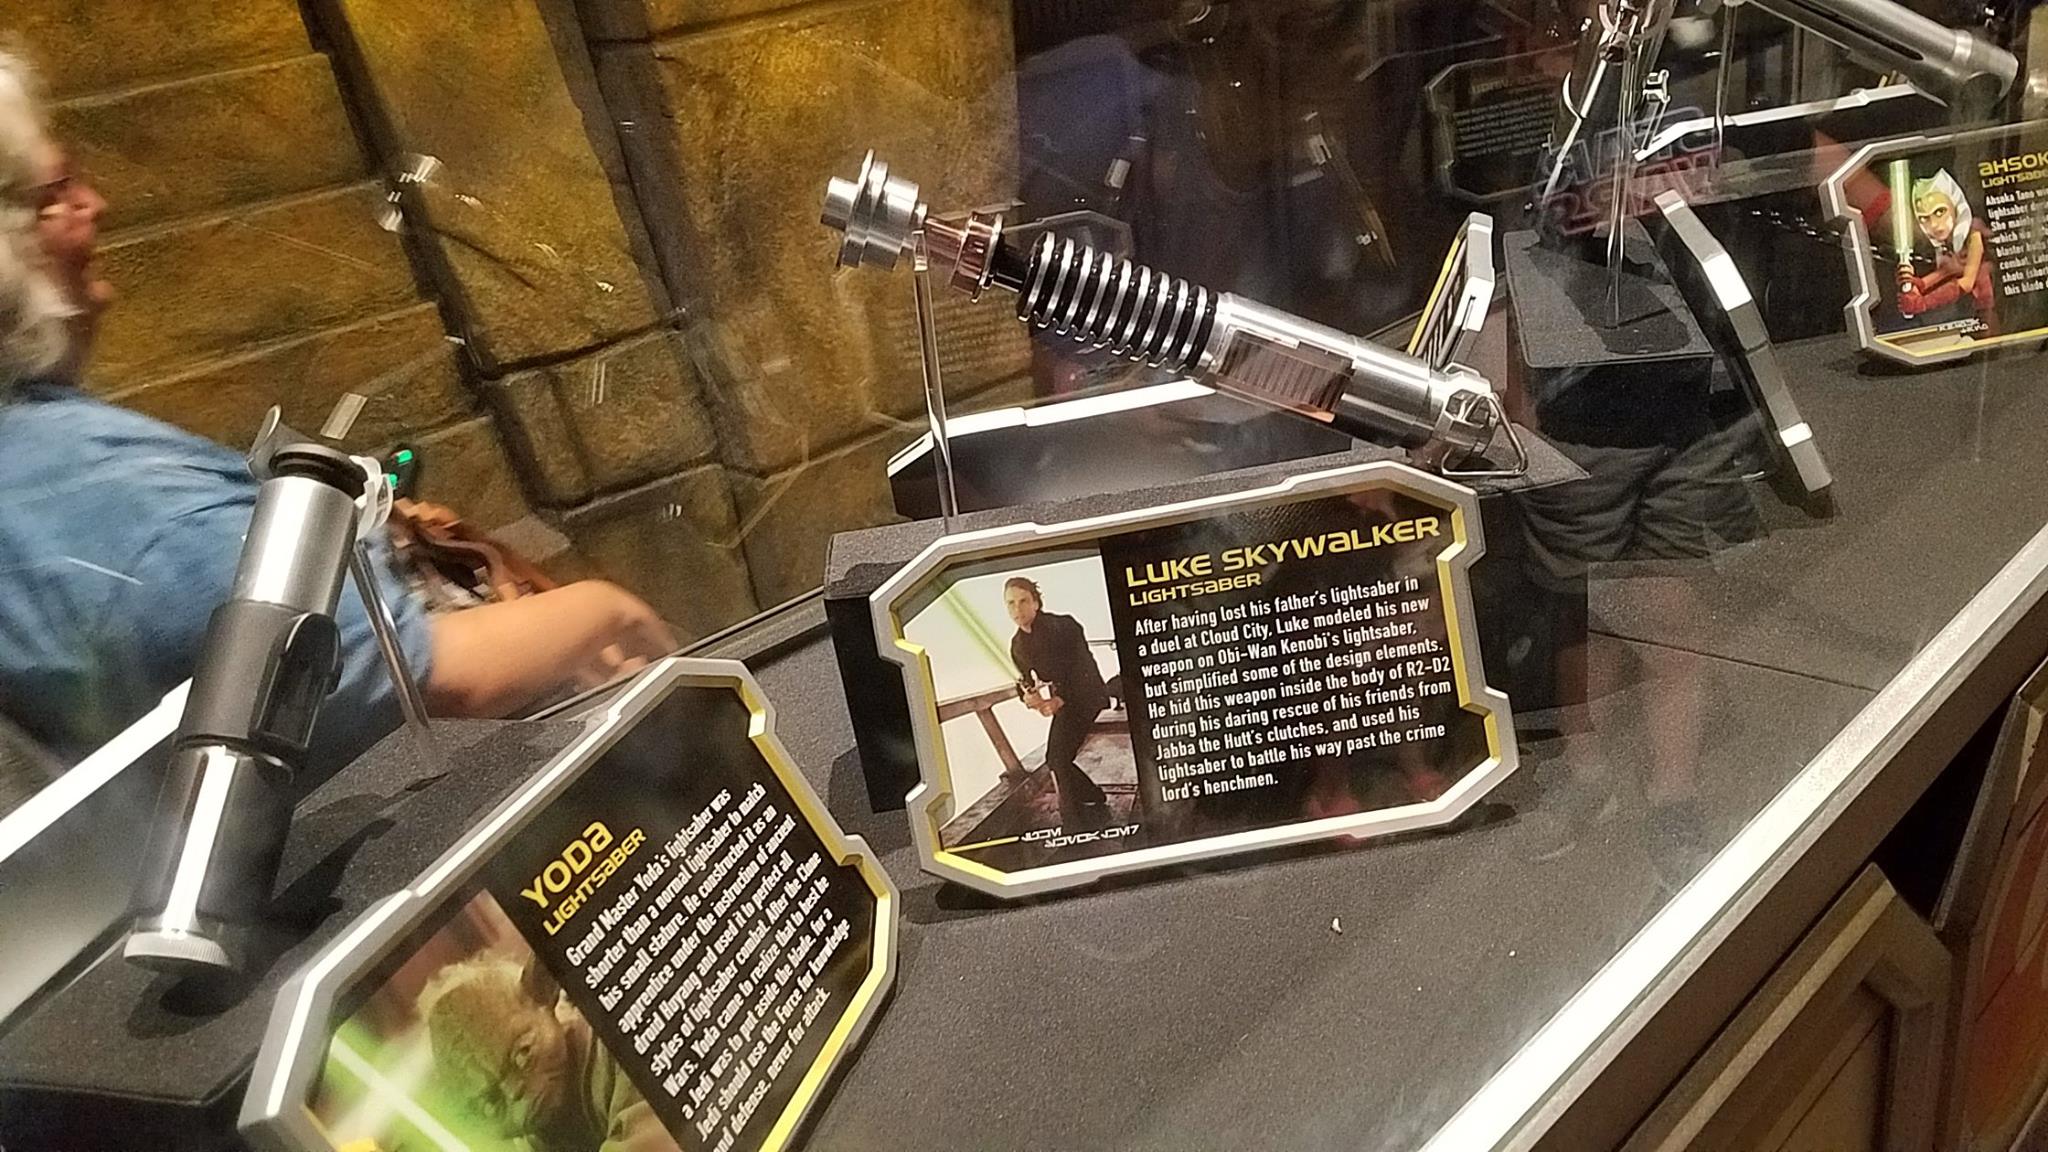 Yoda and Luke's lightsabers